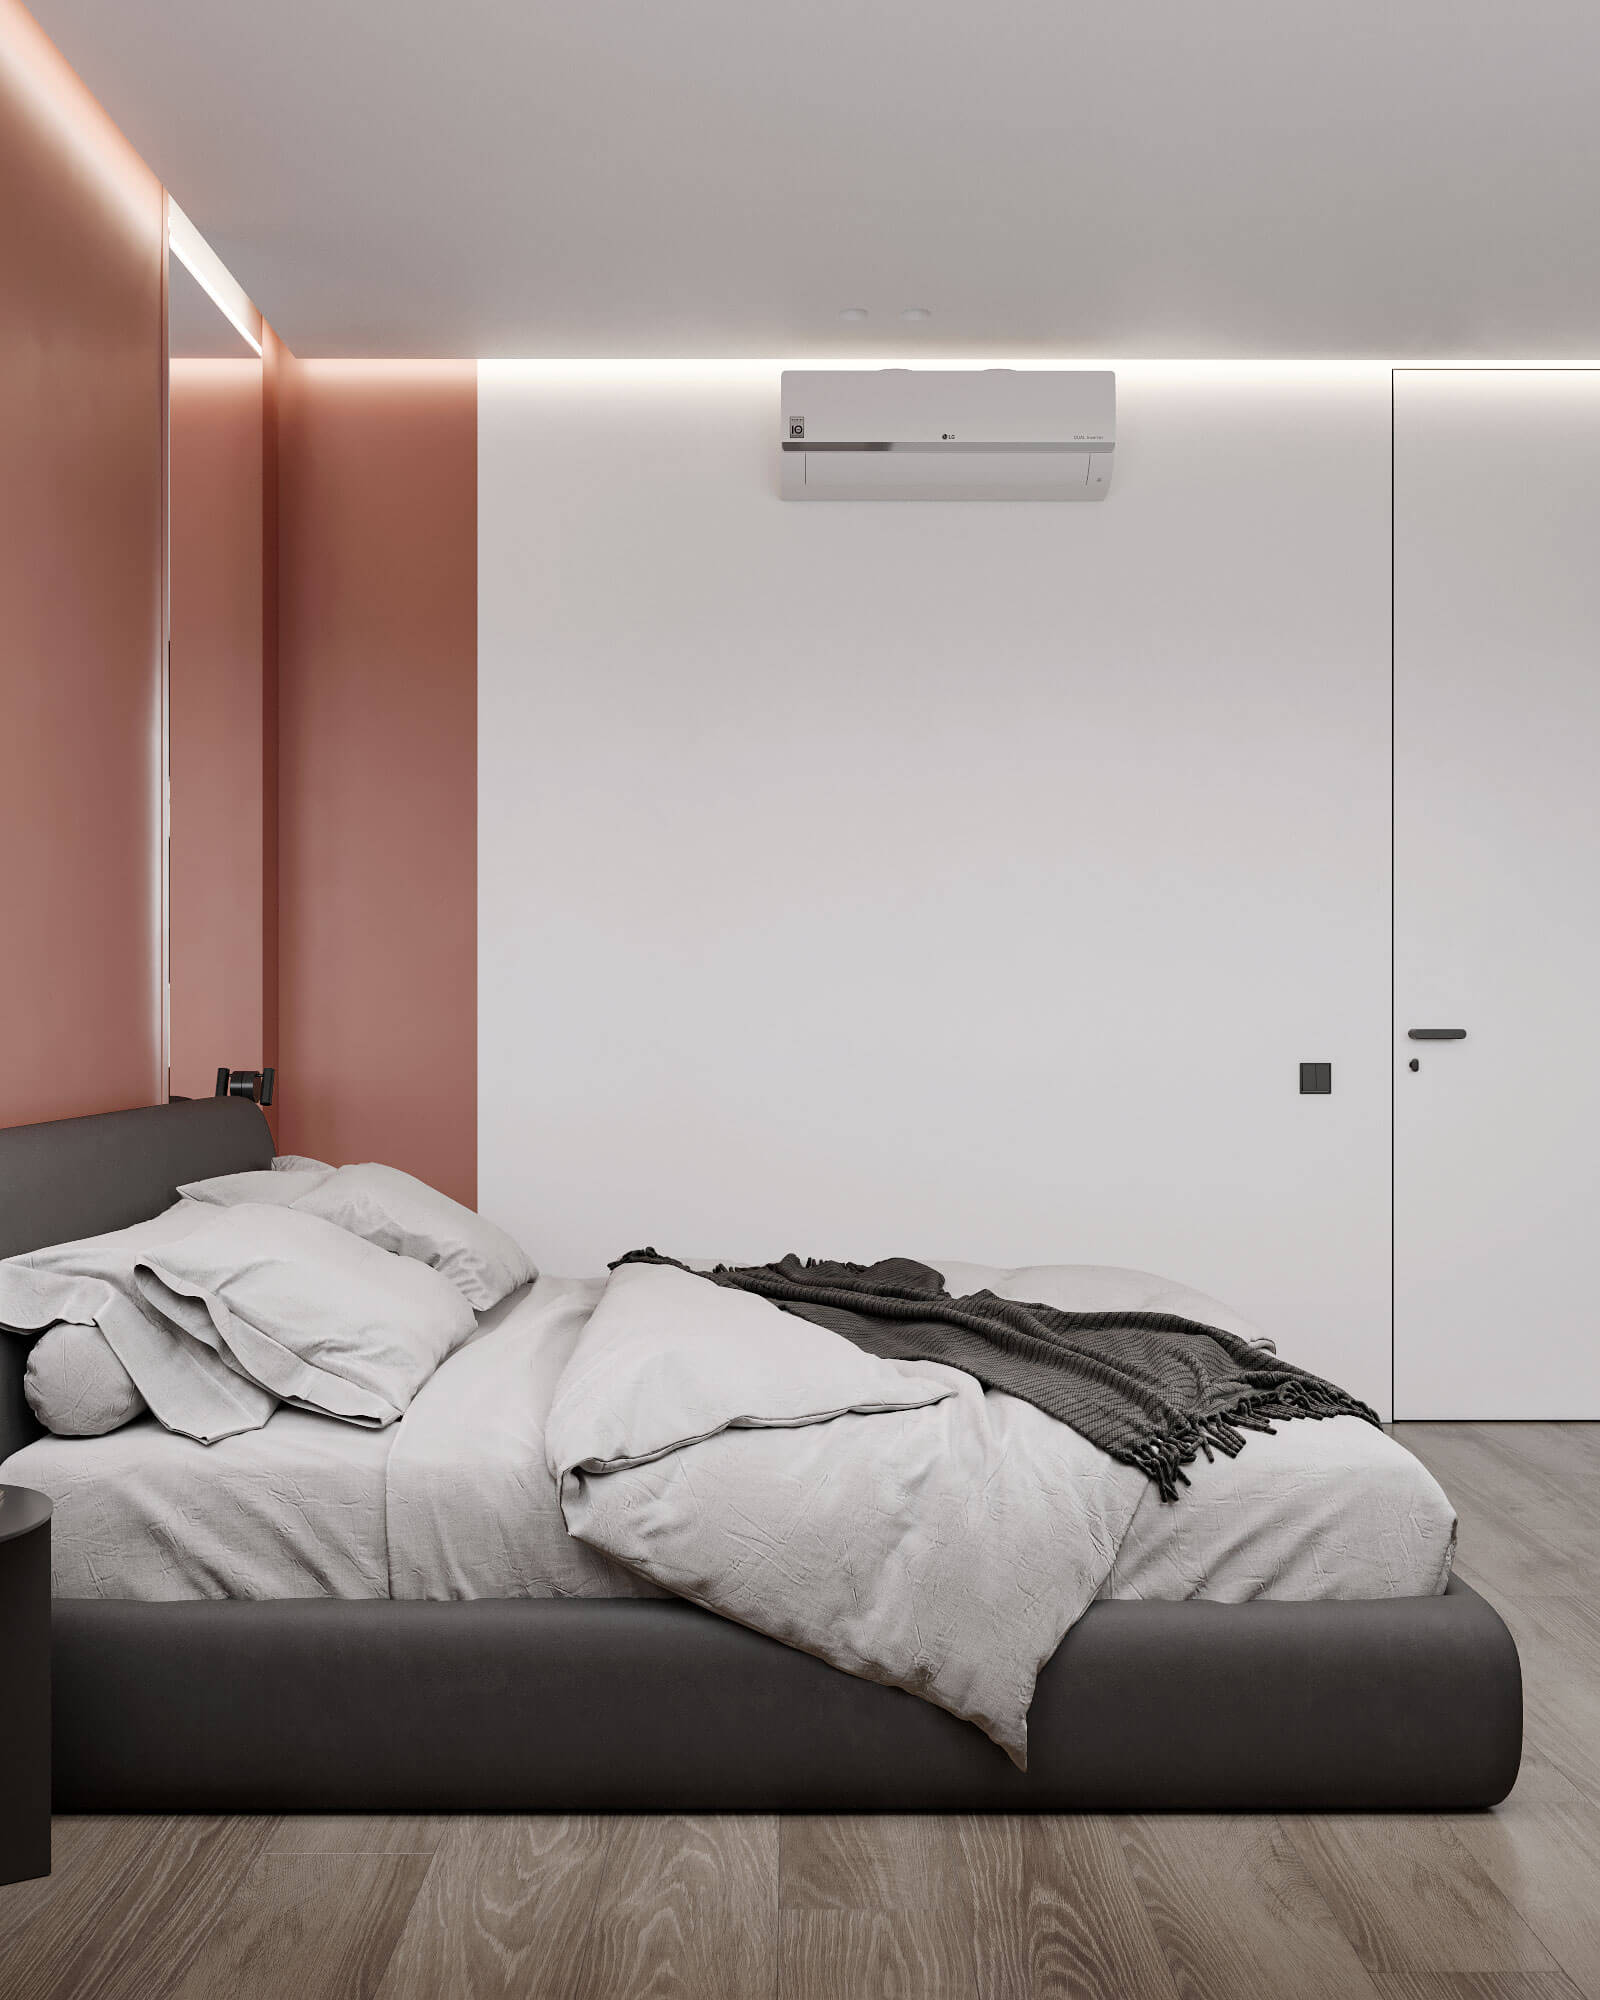 двуспальная кровать на фоне акцентной стены терракотового цвета